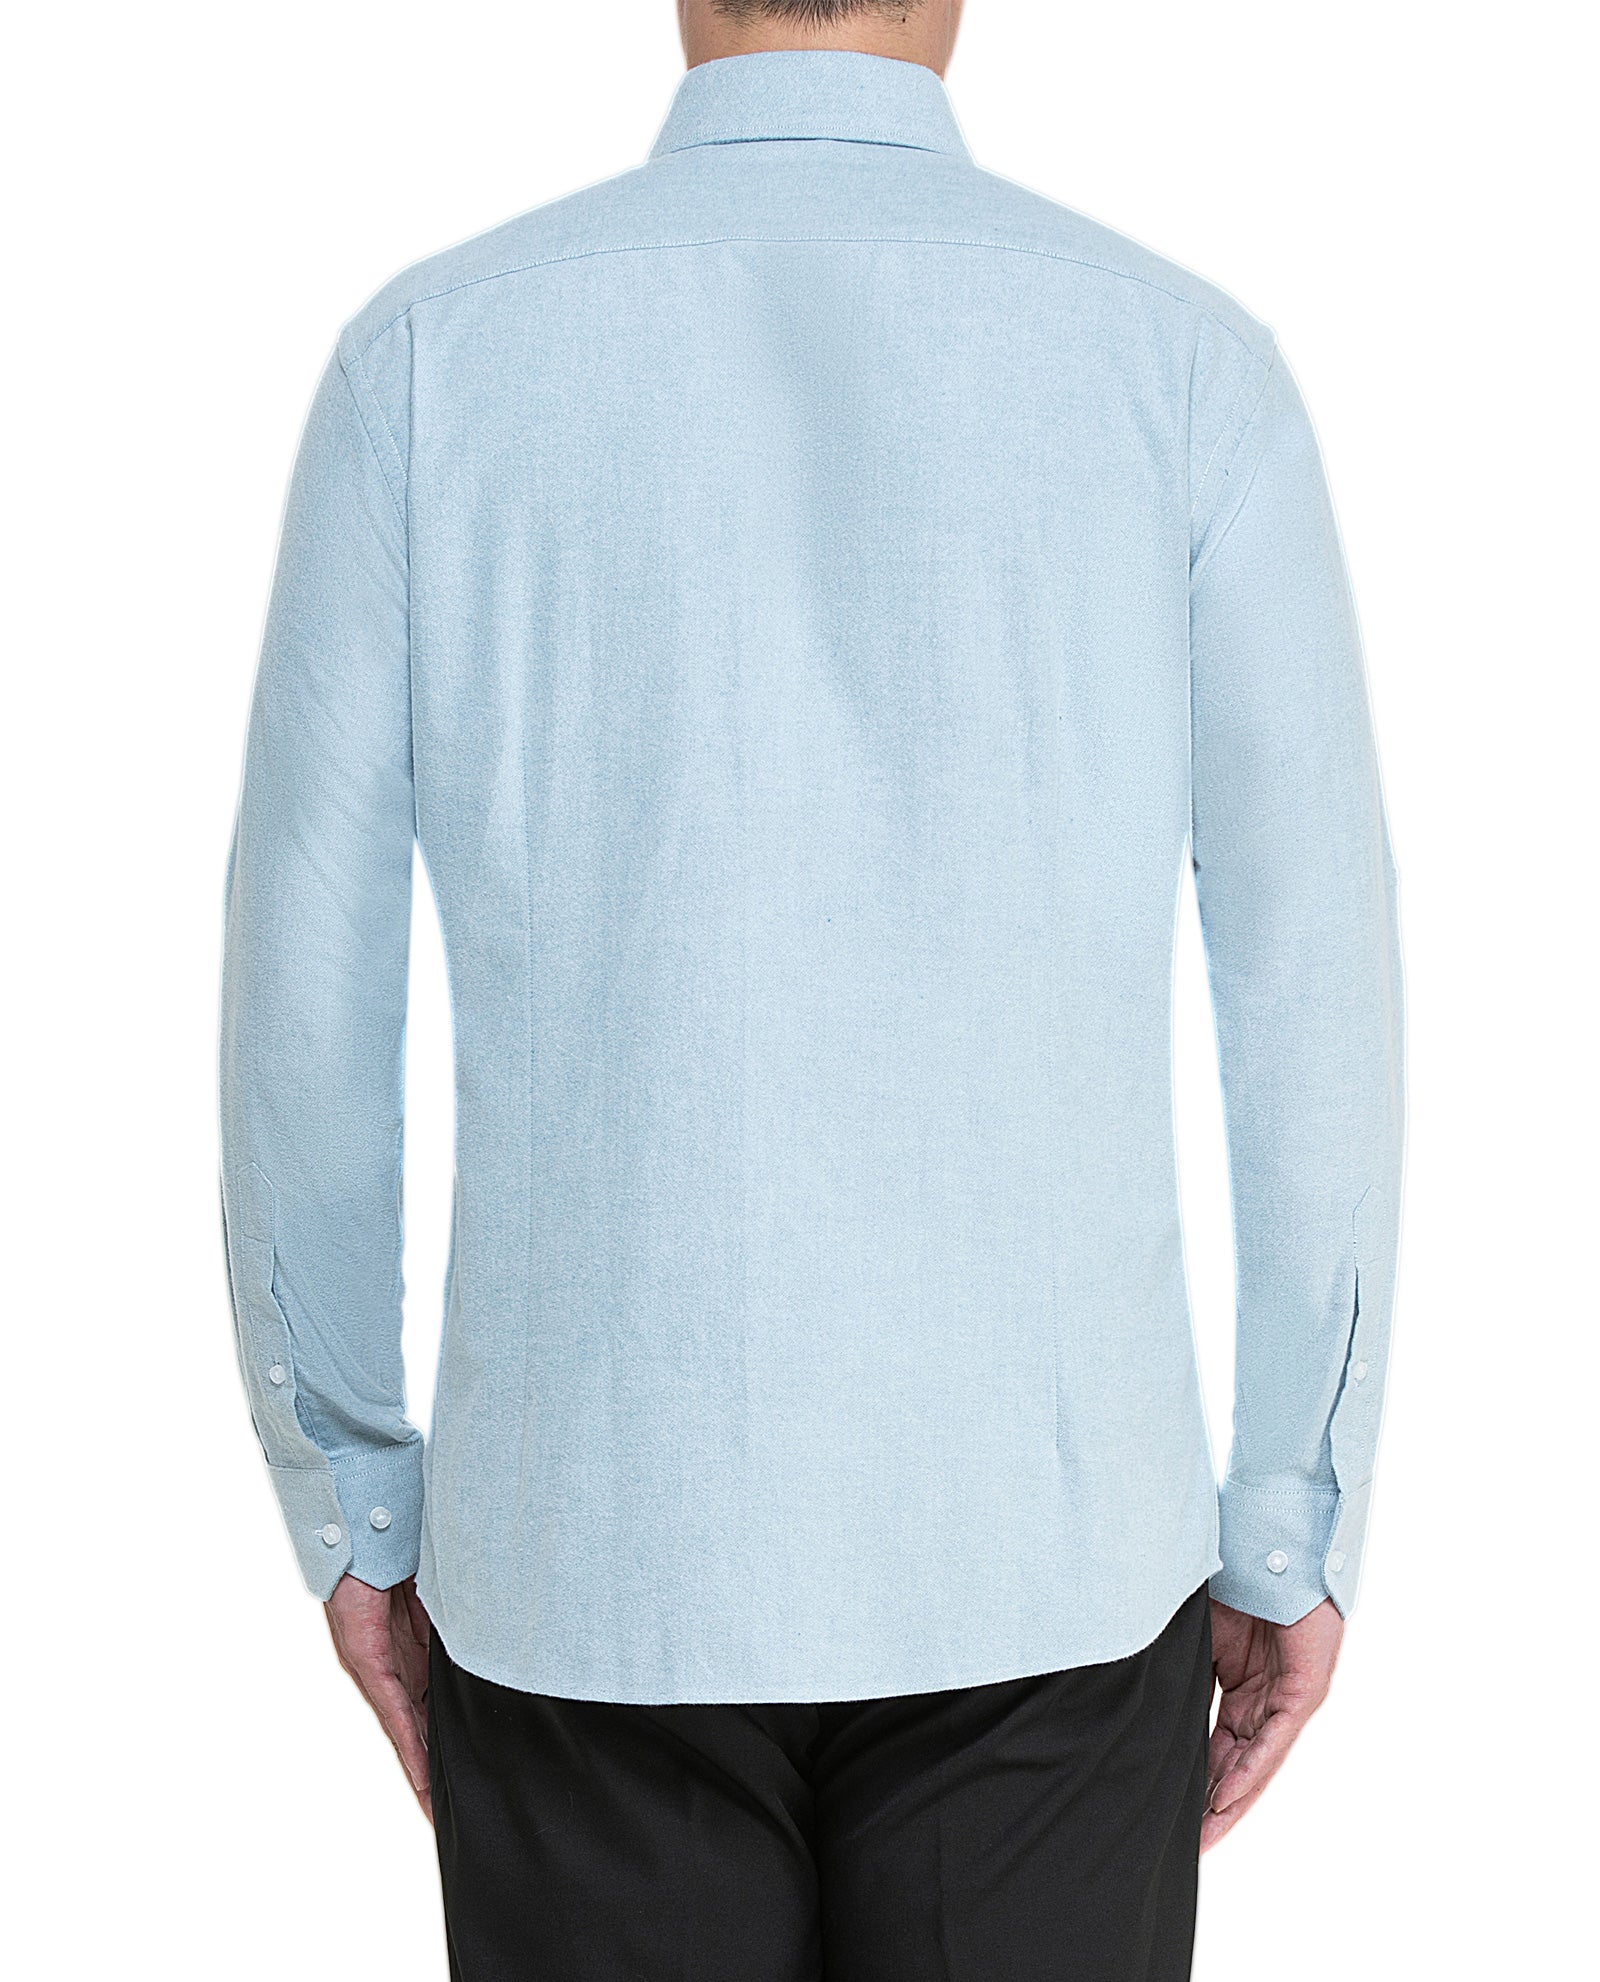 Men's Light Grey Flannel Sport Shirt